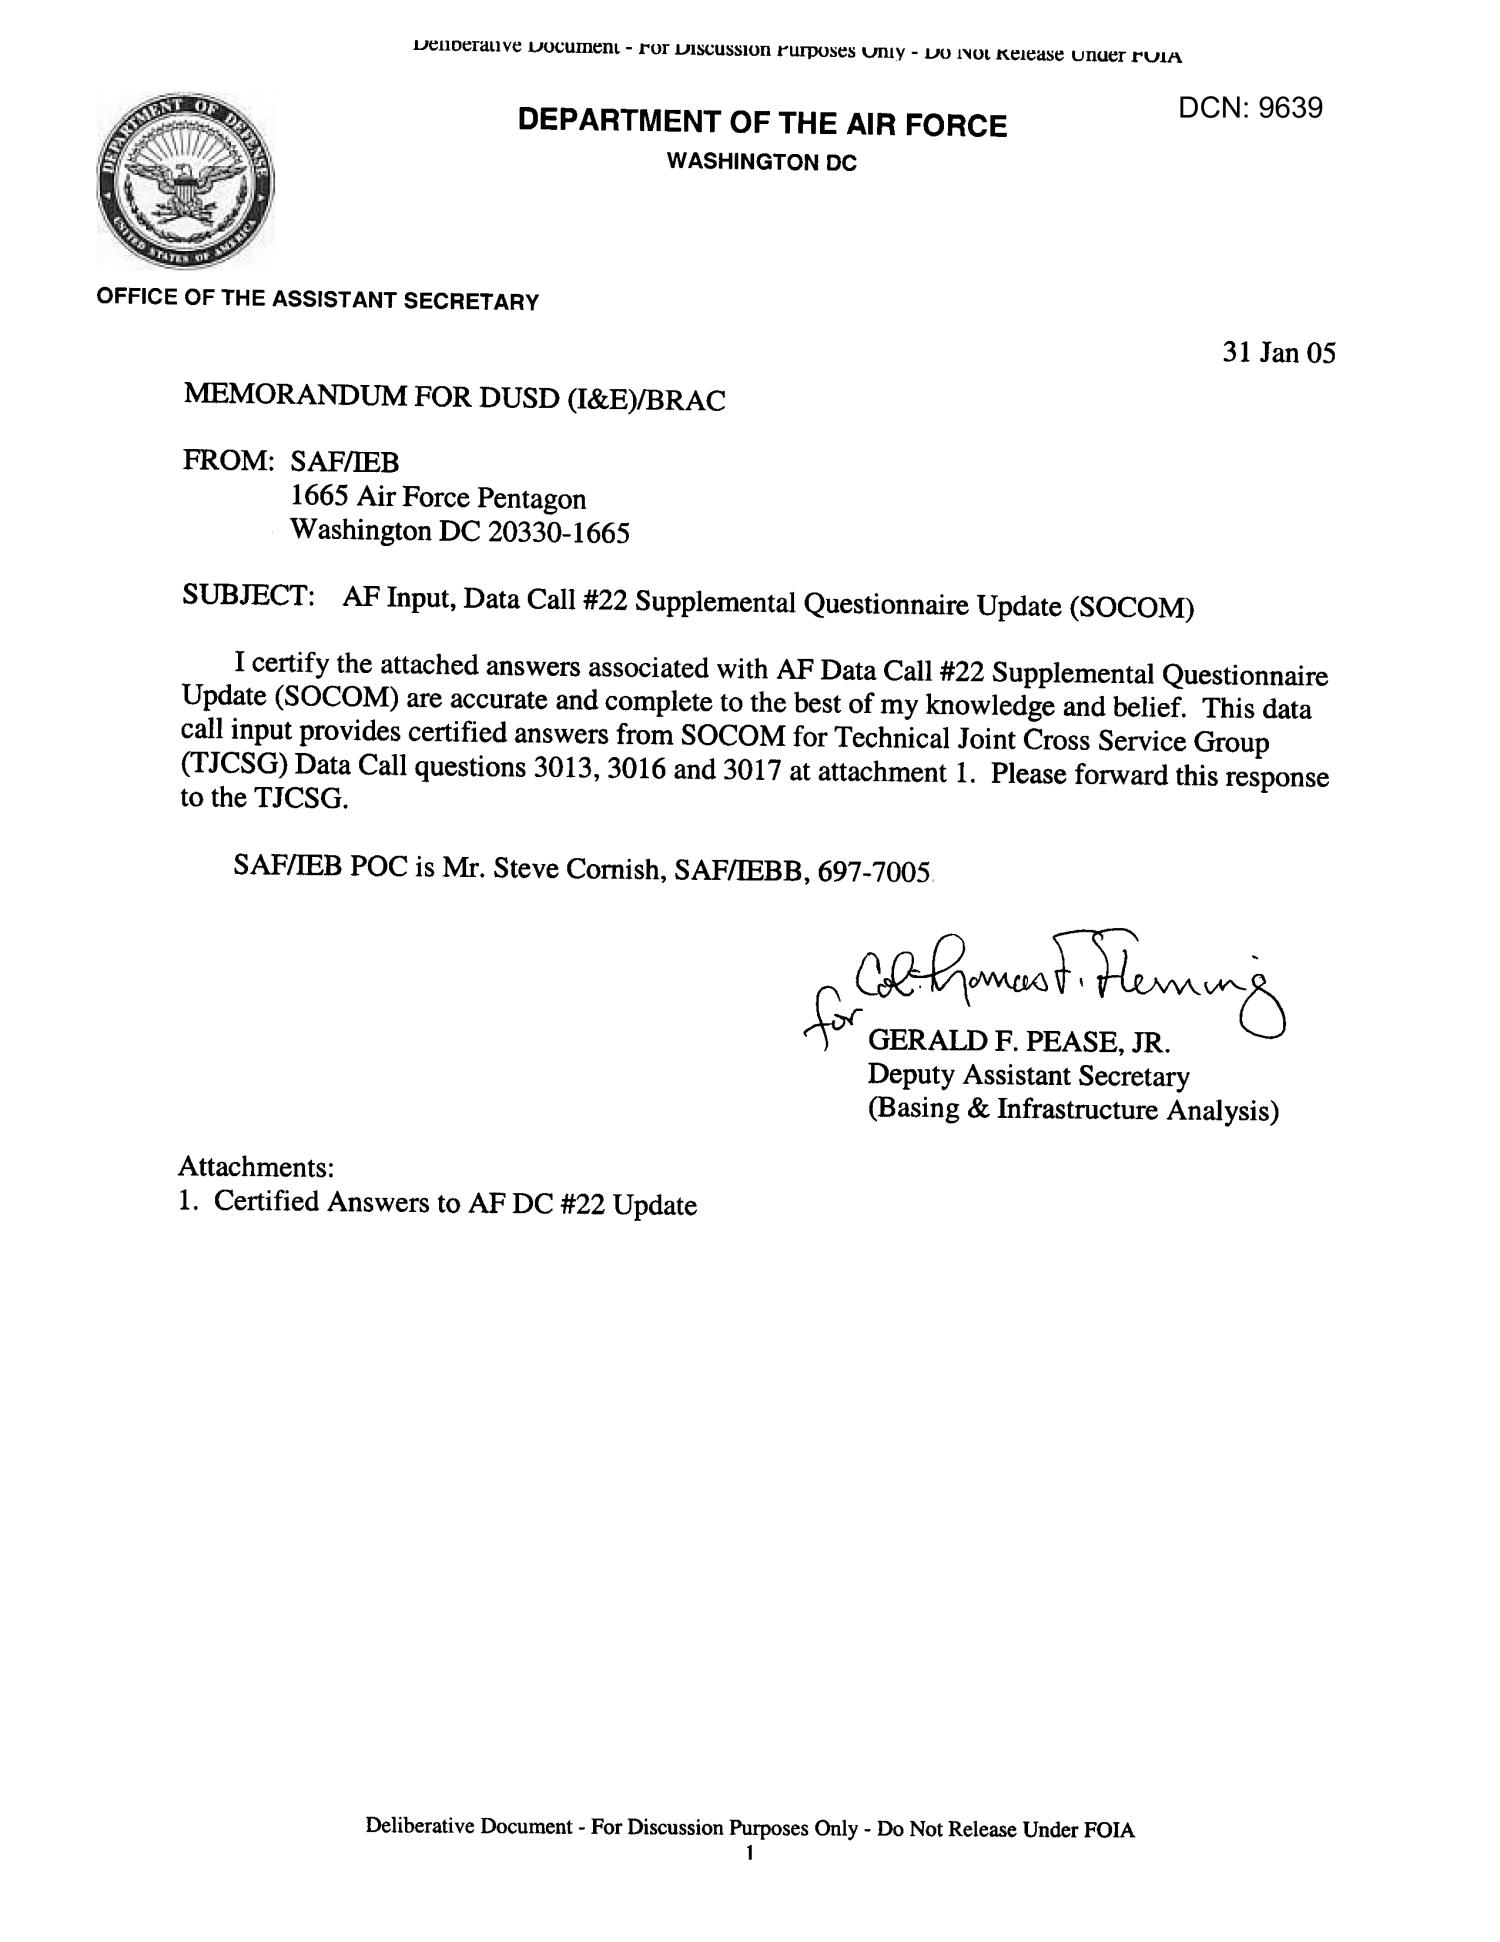 Air Force Official Memorandum Template